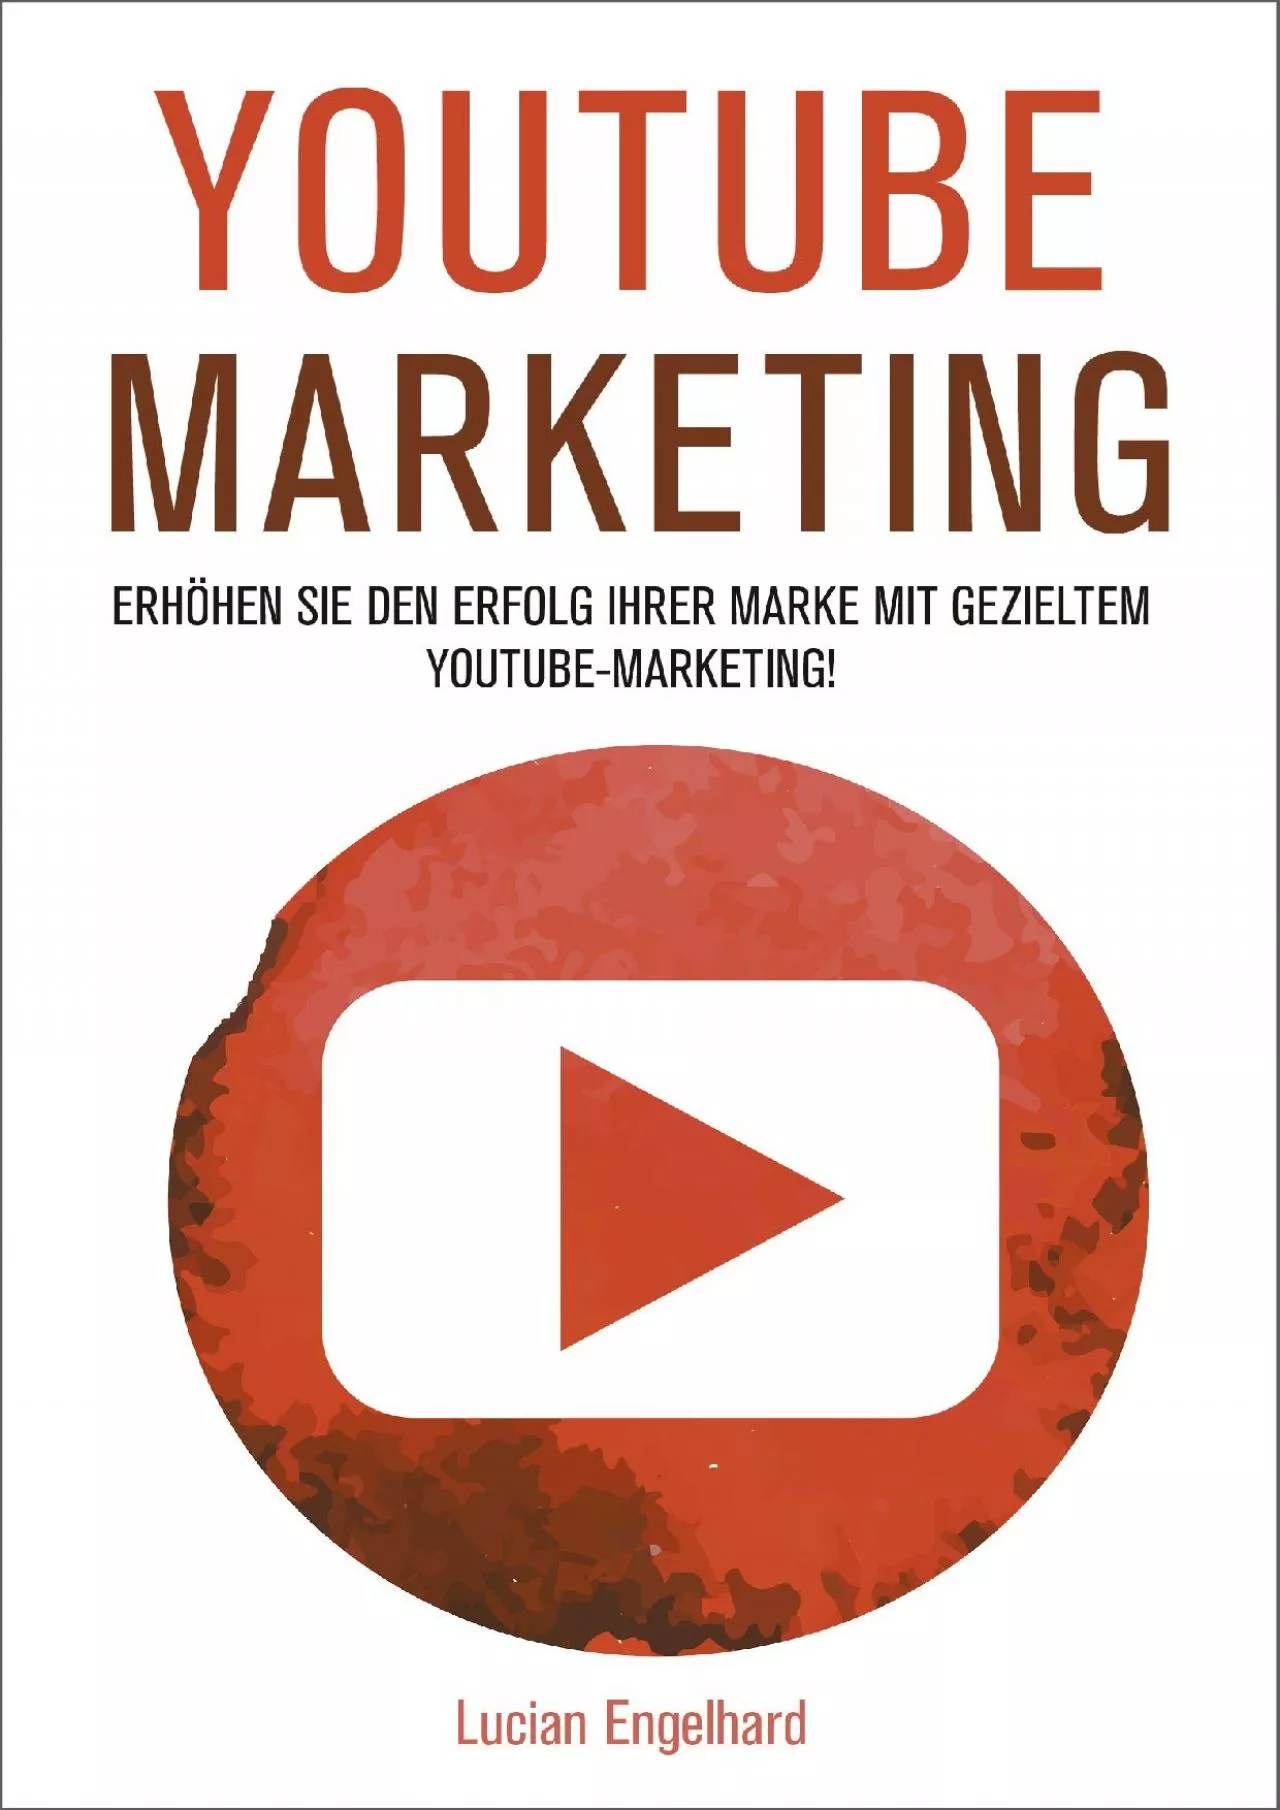 YouTube Marketing: Erhöhen Sie den Erfolg Ihrer Marke mit gezieltem YouTube-Marketing